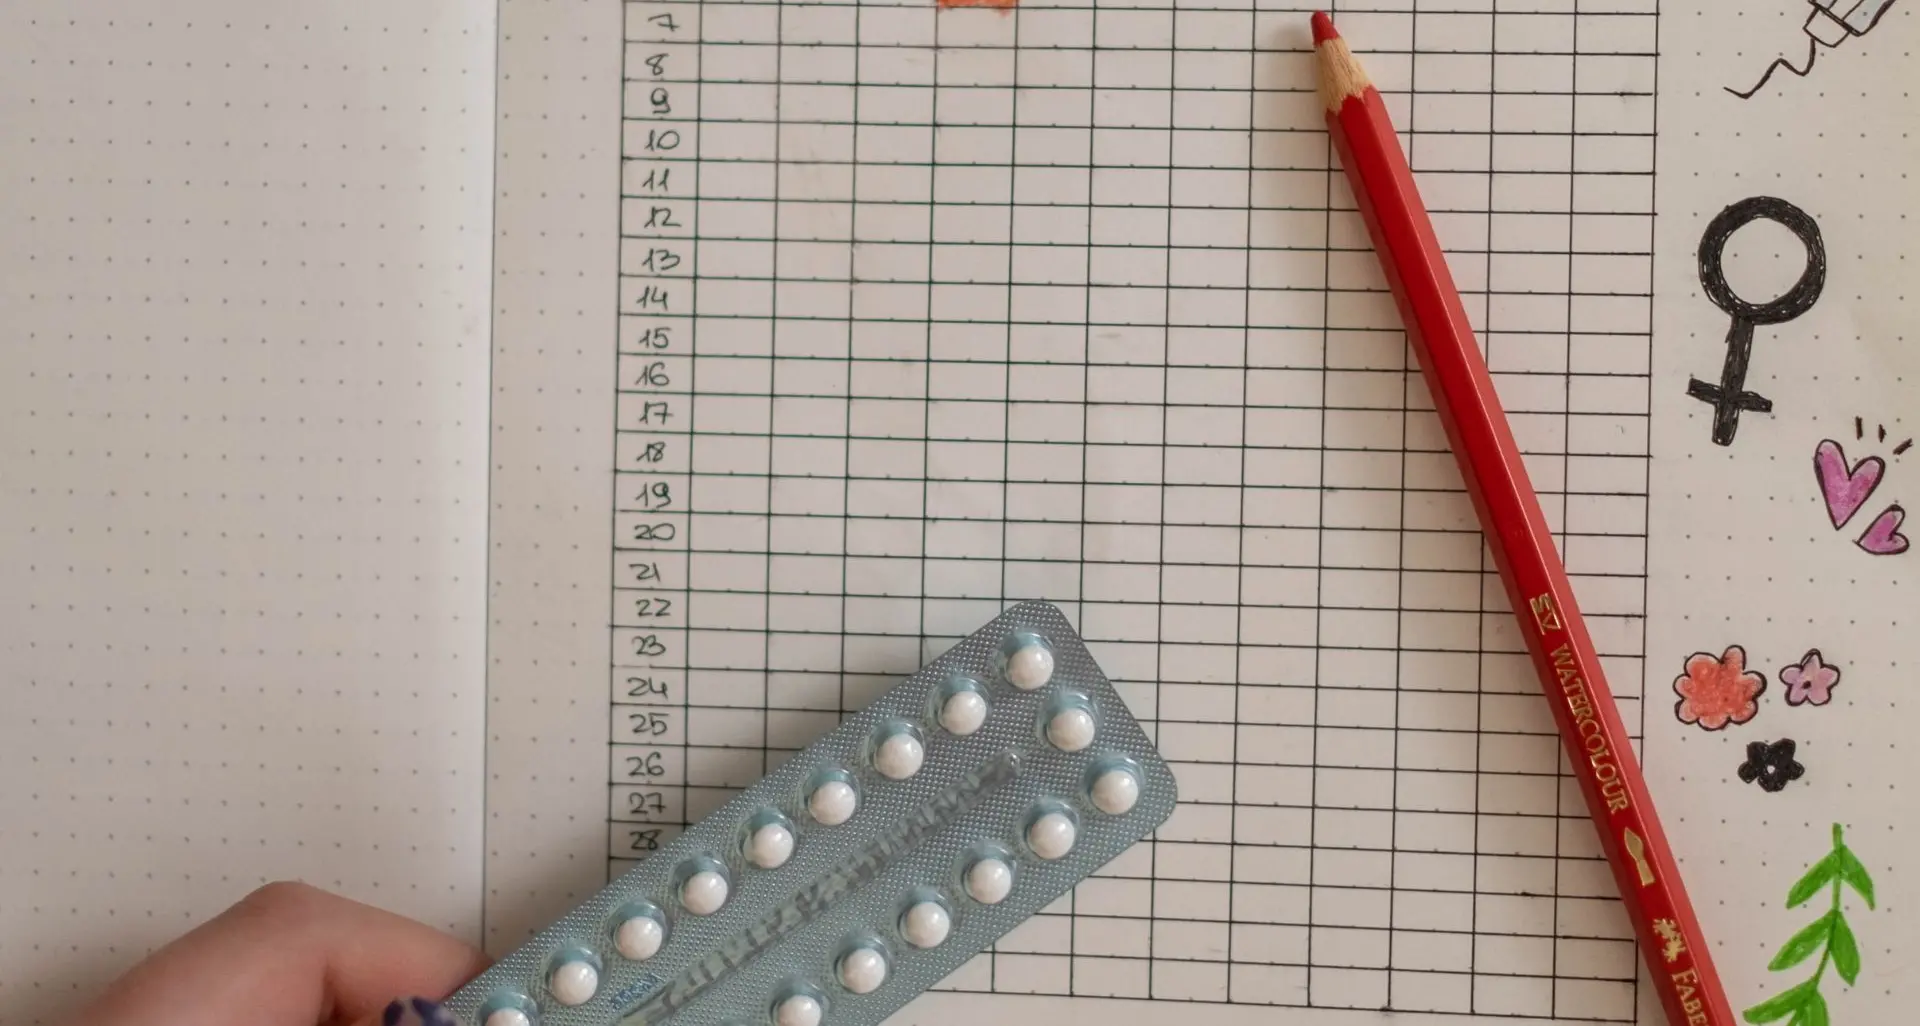 Contraccezione: grave decisione Aifa di rimandare gratuità pillola anticoncezionale